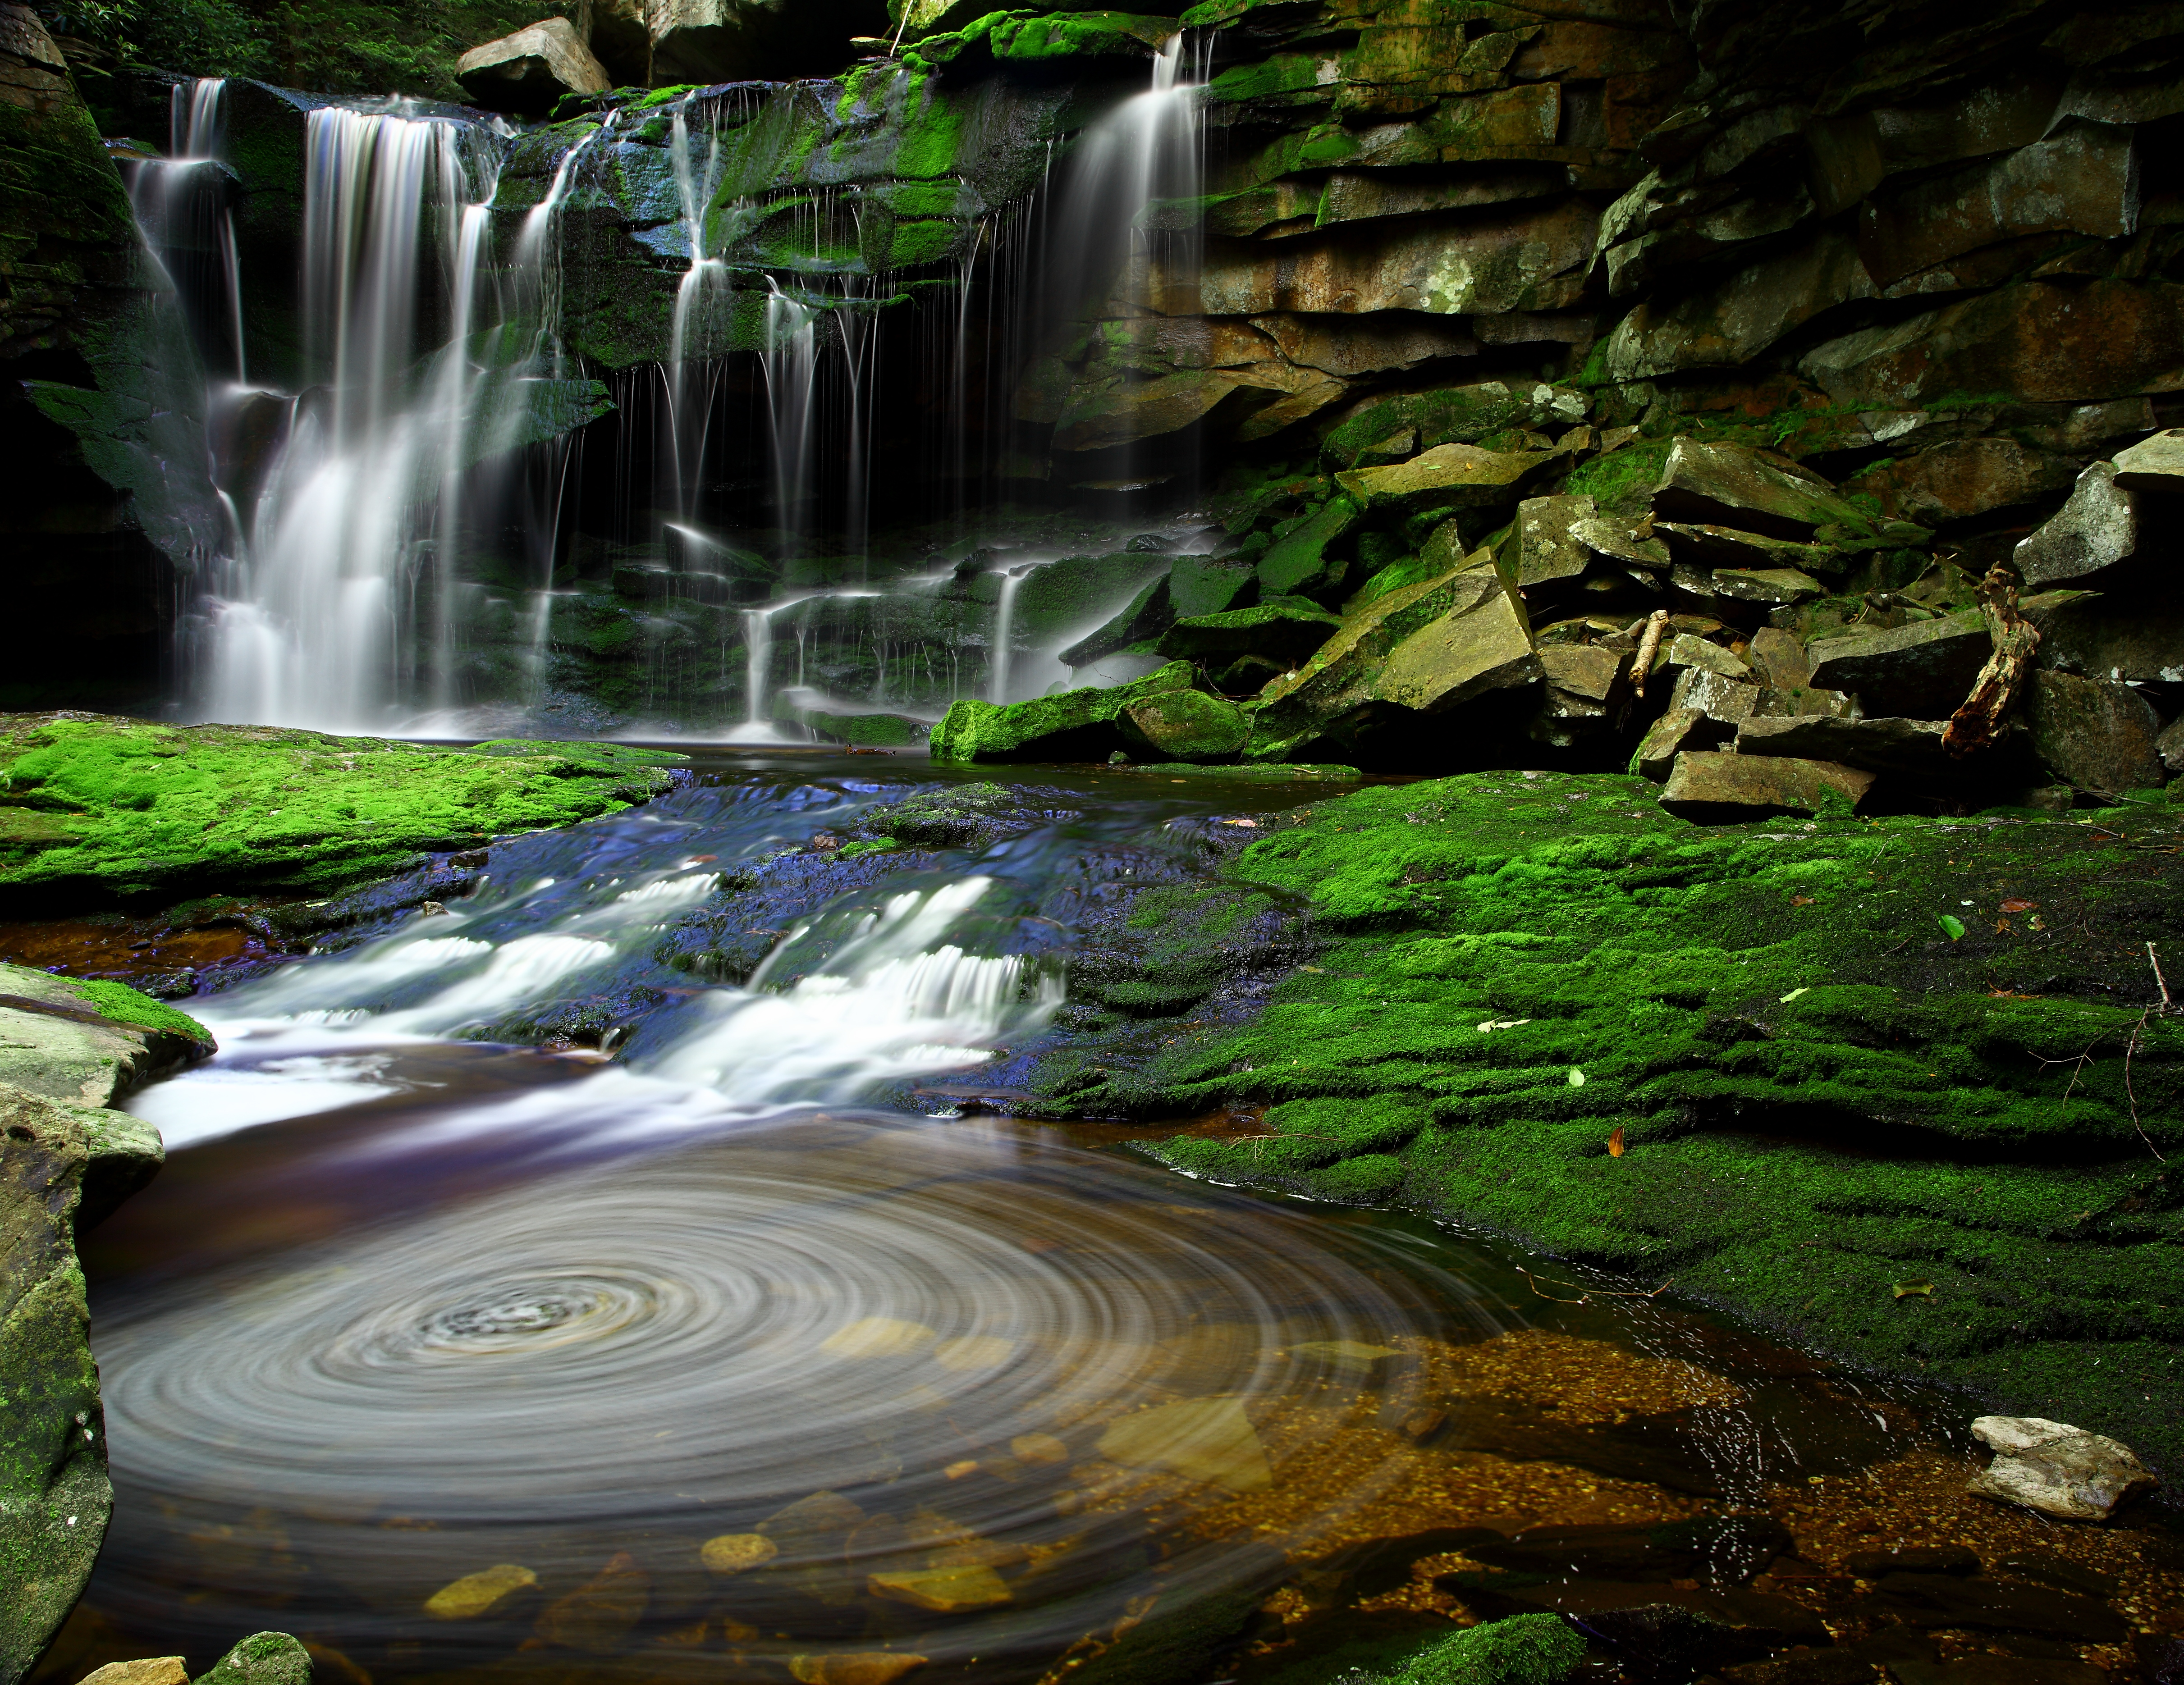 File:Elakala Waterfalls Swirling Pool Mossy Rocks.jpg - Wikimedia ...